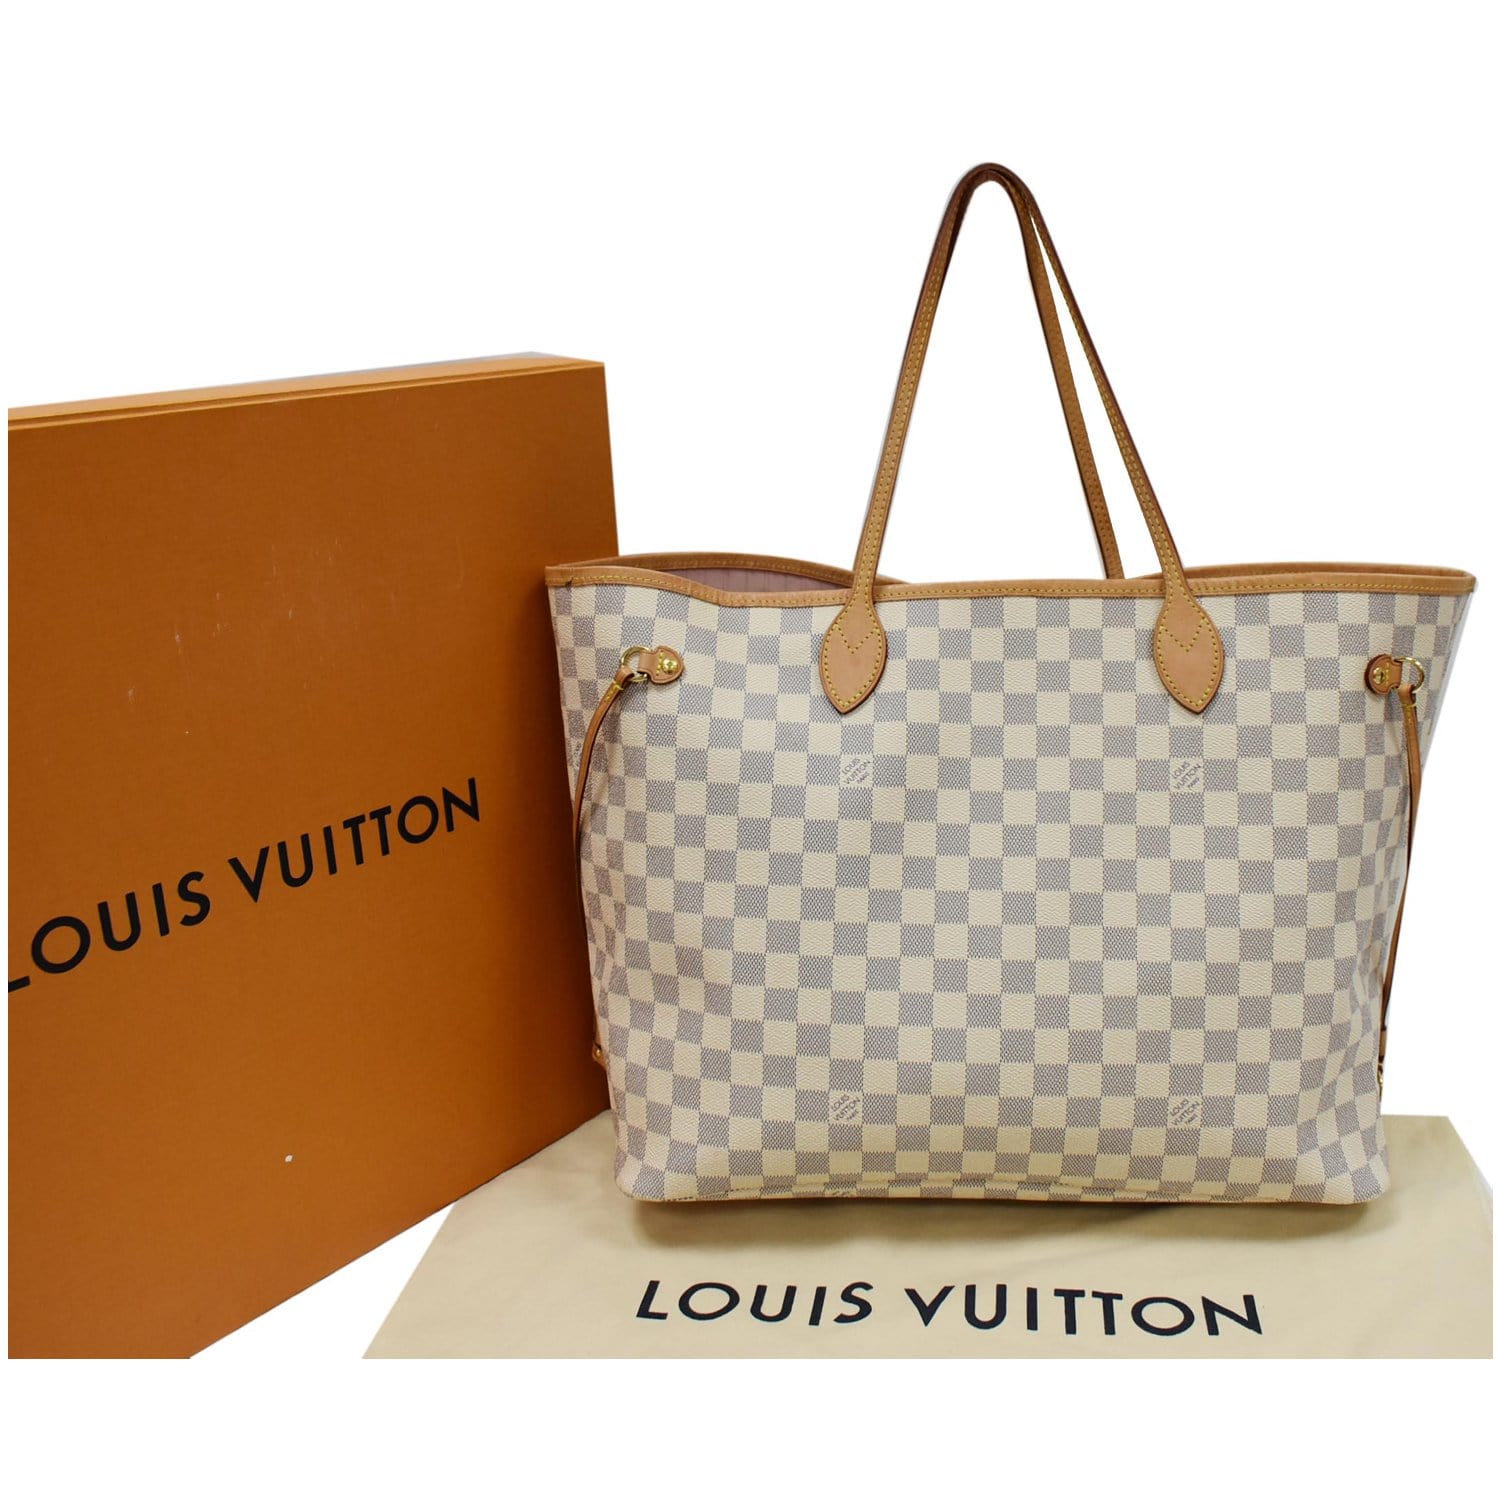 Sold at Auction: Louis Vuitton, LOUIS VUITTON 'NEVERFULL GM' DAMIER AZUR  TOTE BAG